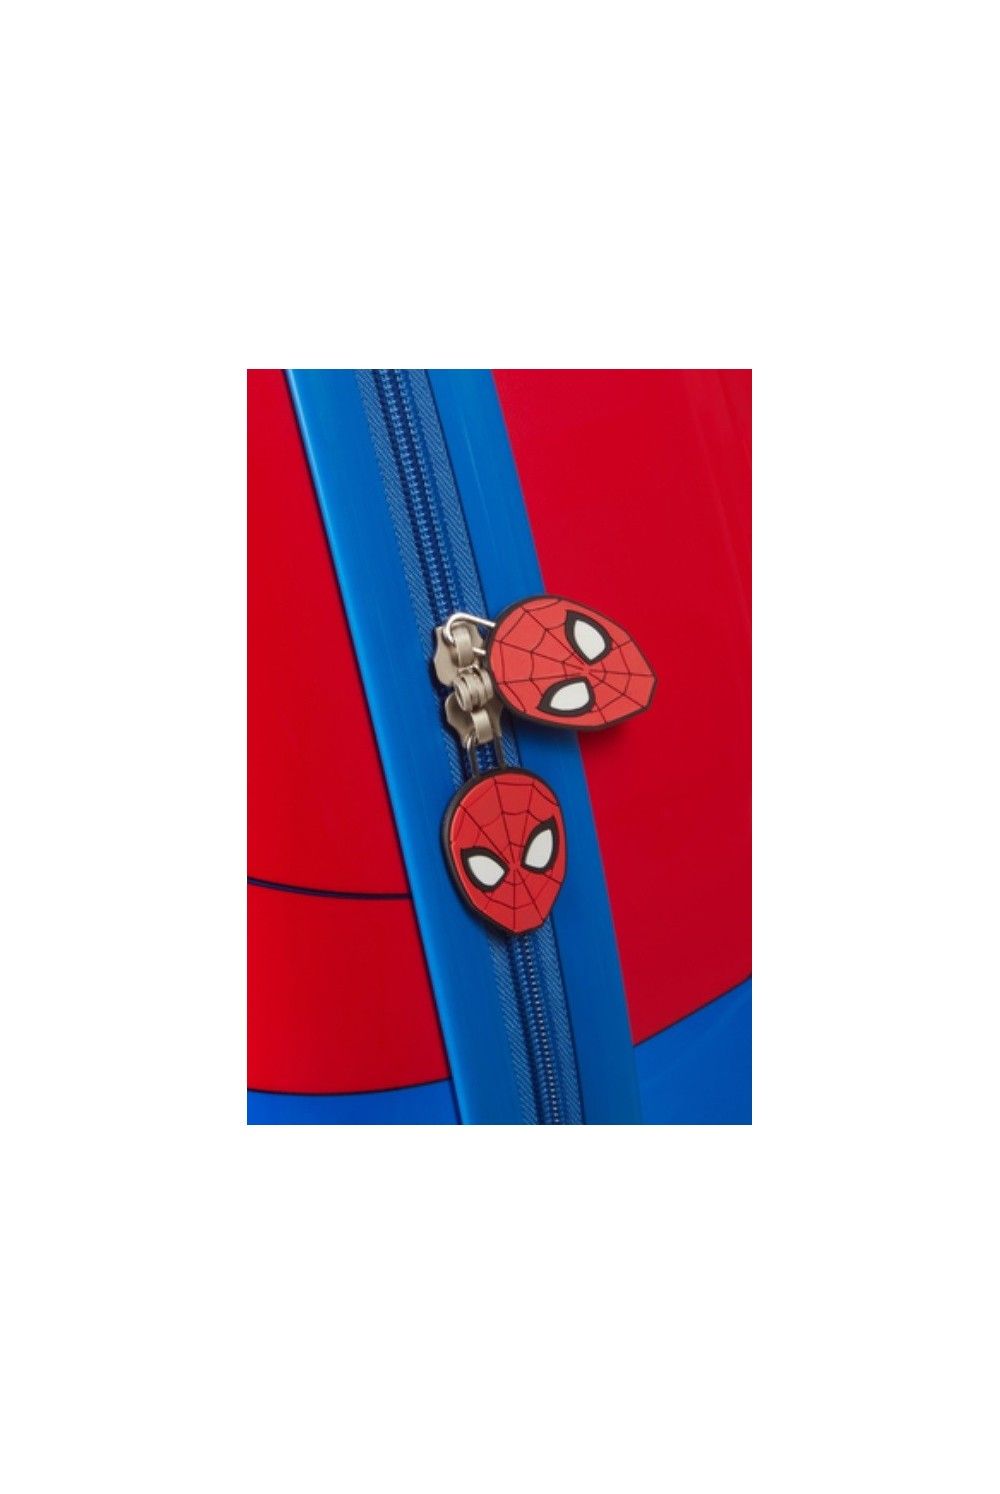 Kinderkoffer Disney Ultimate 2.0 Marvel Spider-Man 46 cm 4 Rad